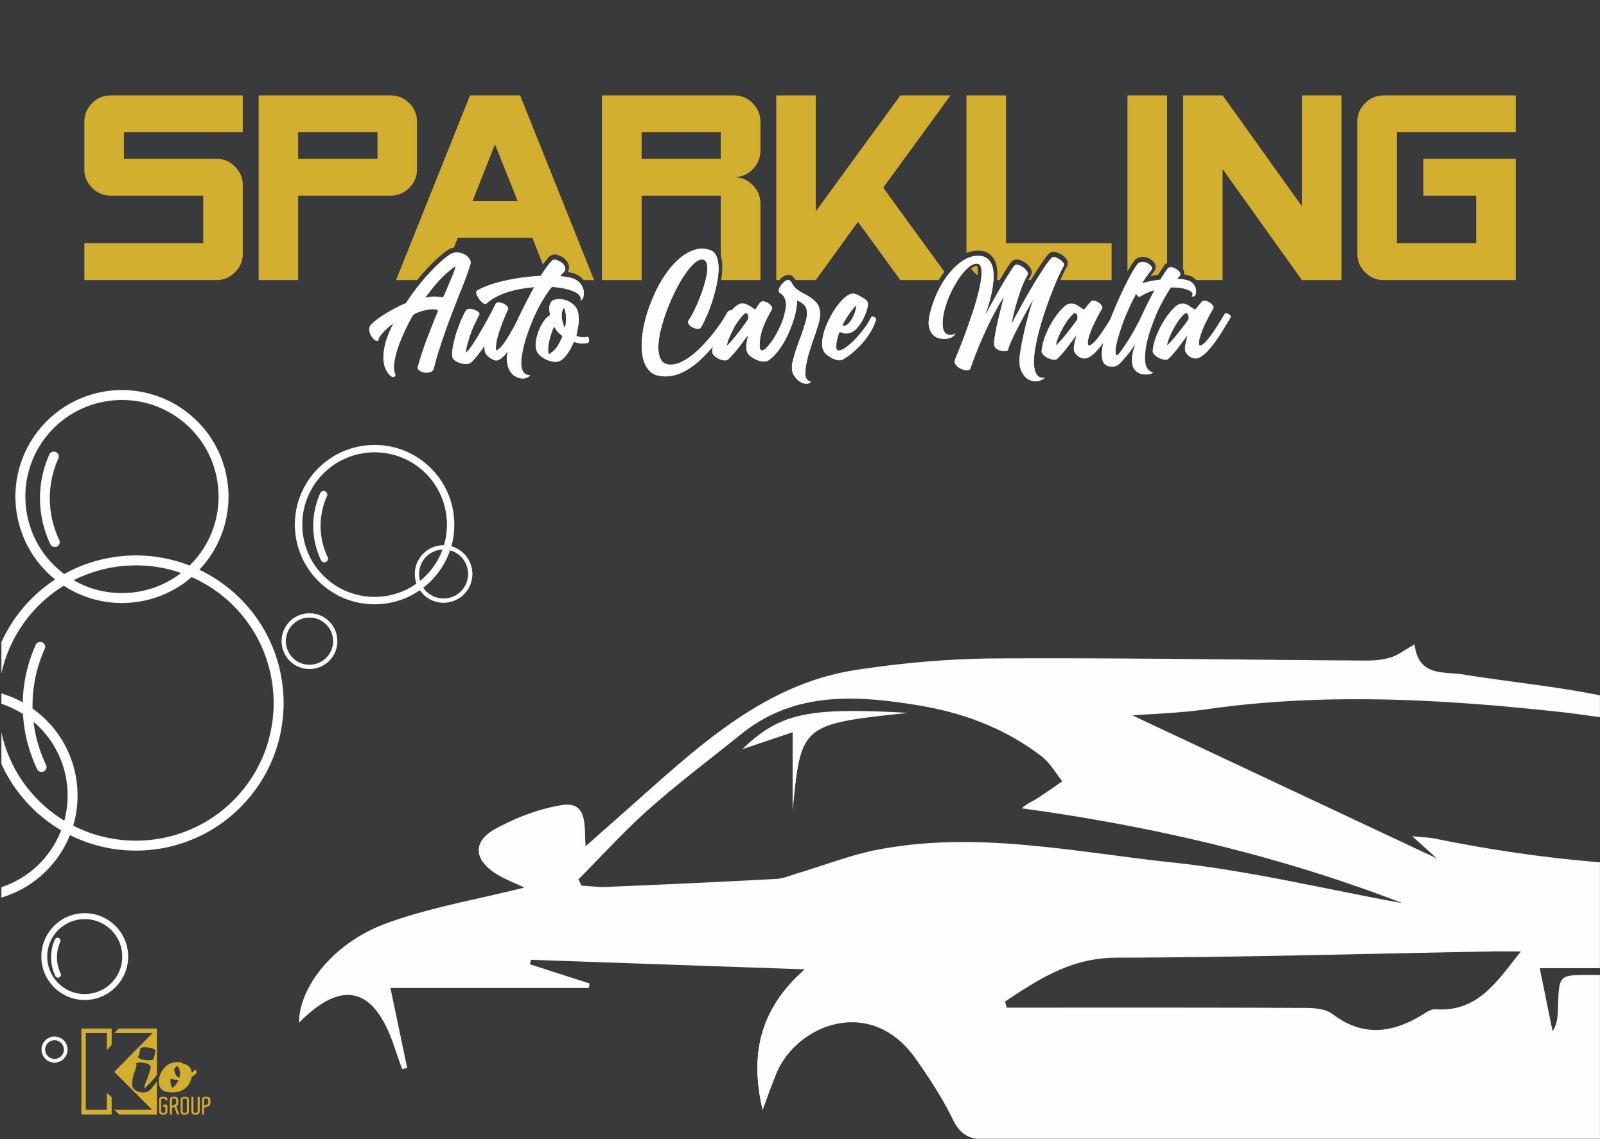 Sparkle Auto Care Malta